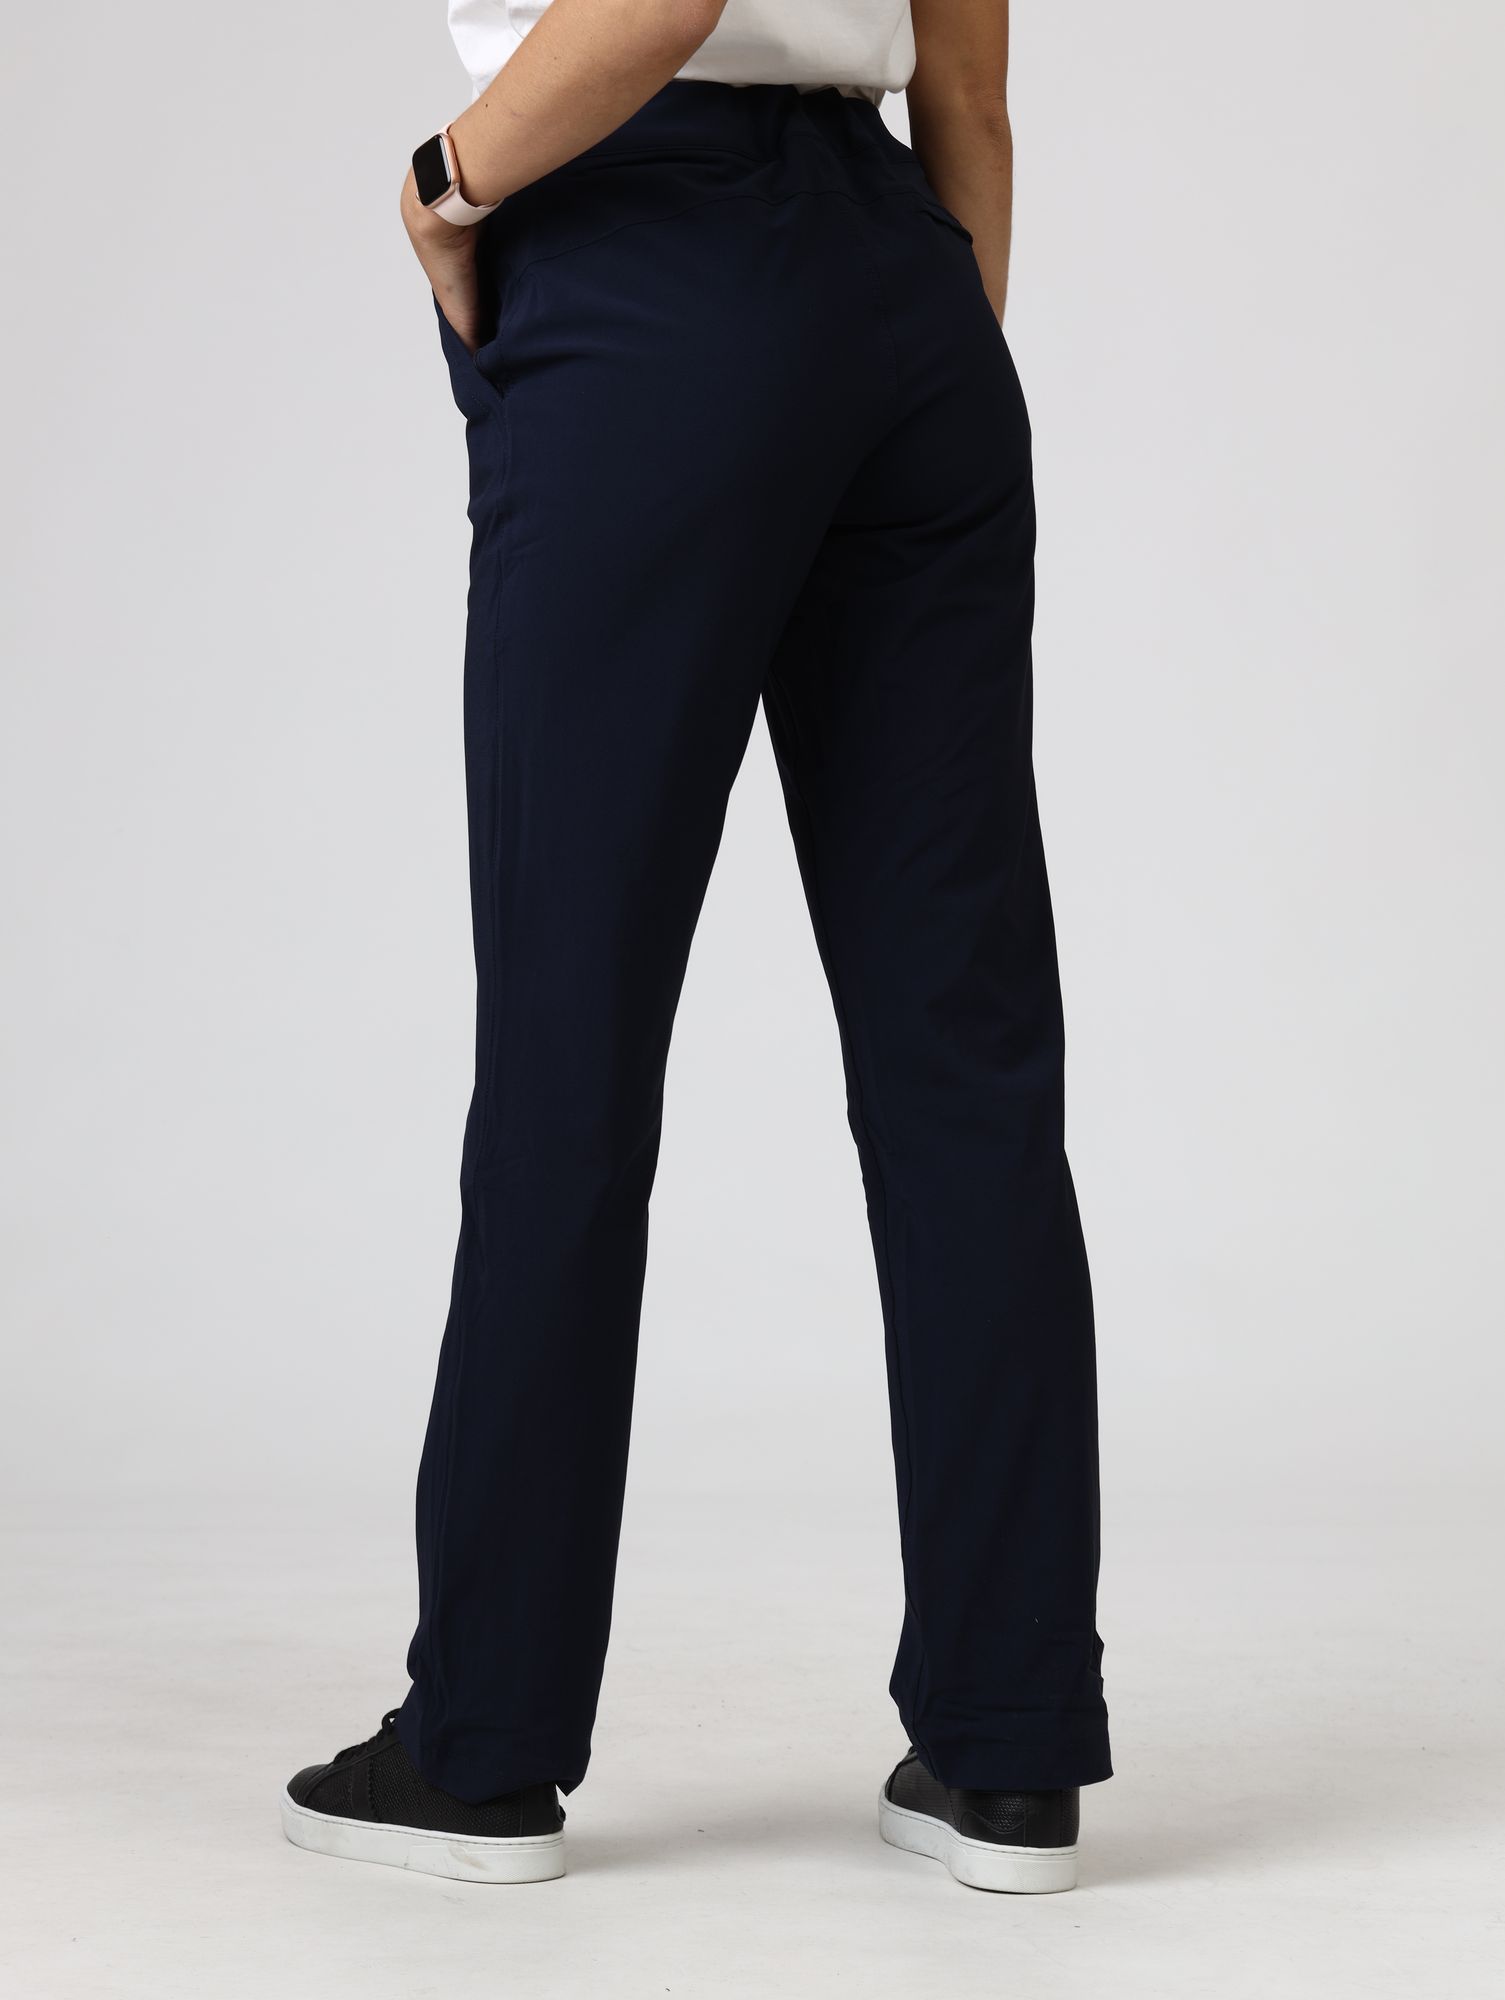 1860201 брюки спортивные anytime outdoor™ lined pant columbia 